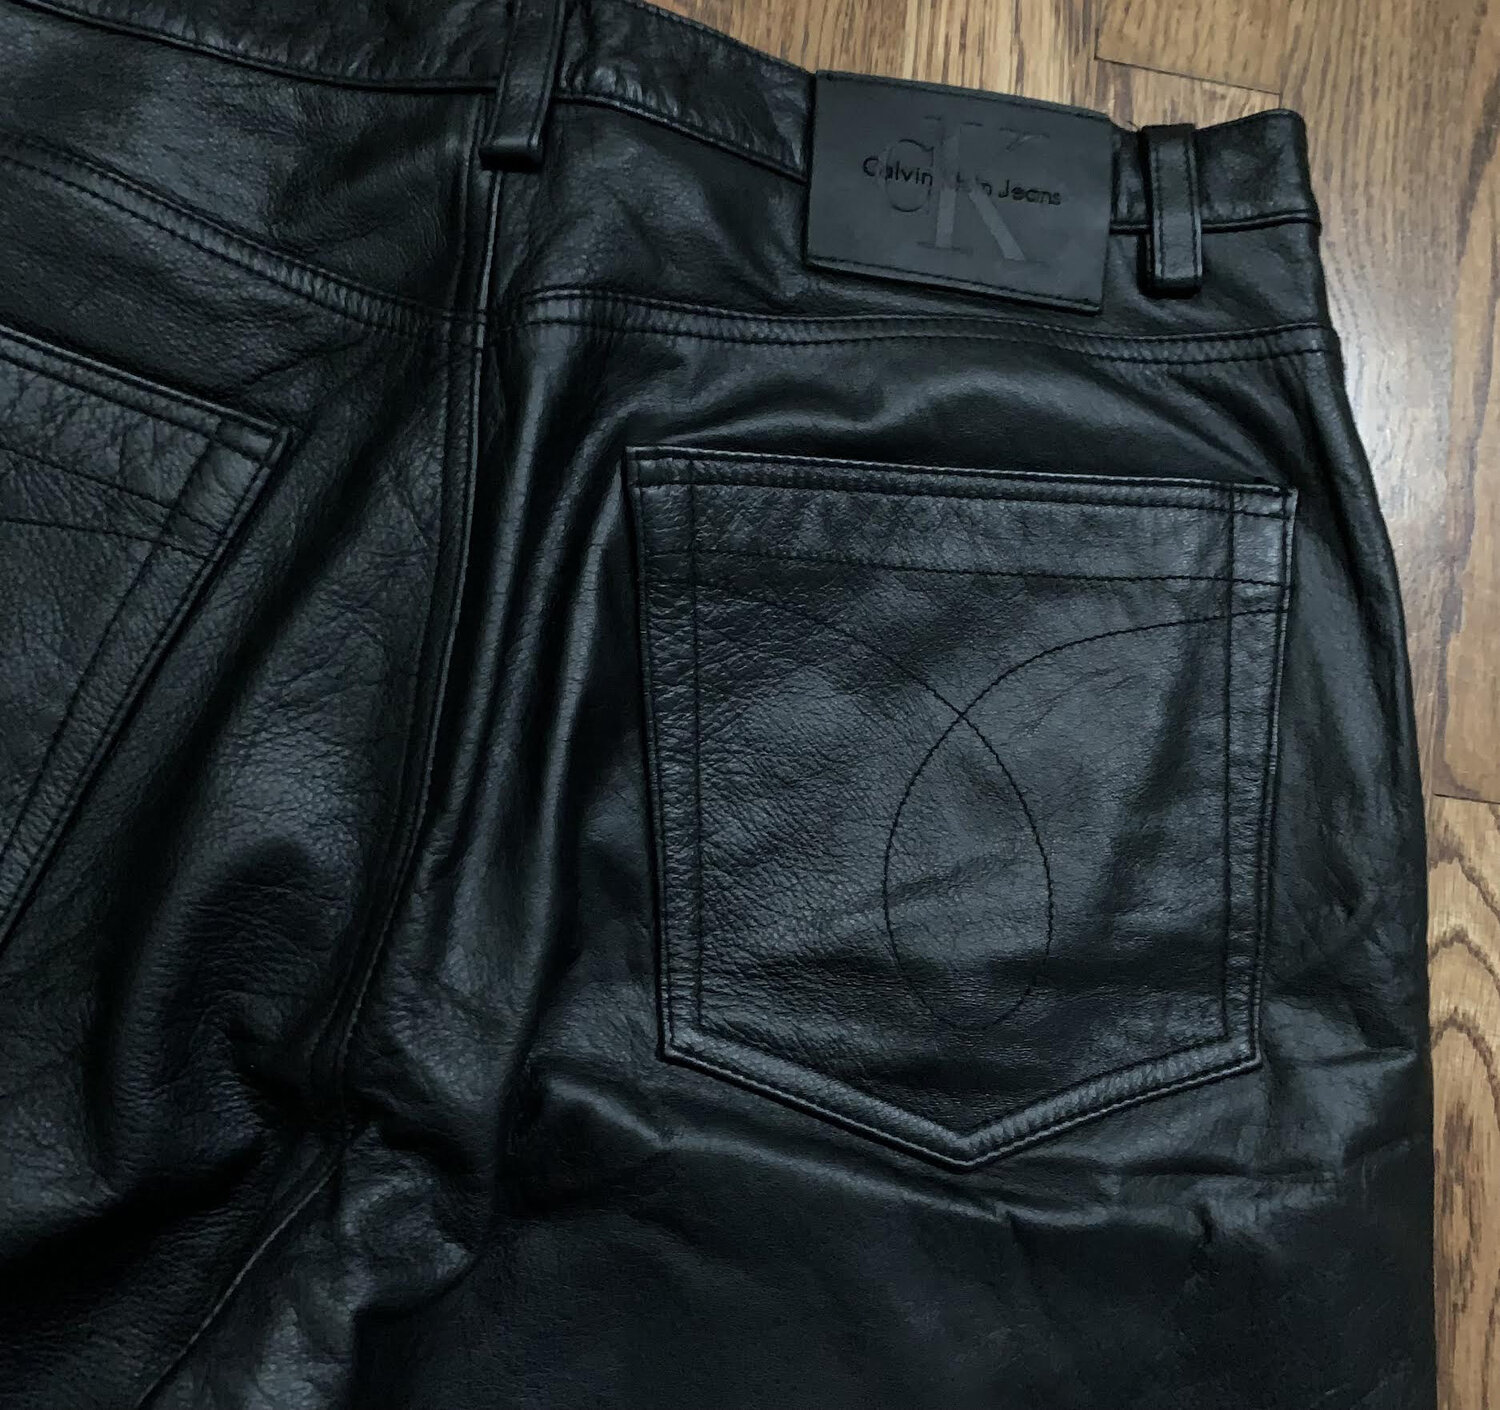 Vintage Calvin Klein Black Leather Pants (Size 34) — Roots